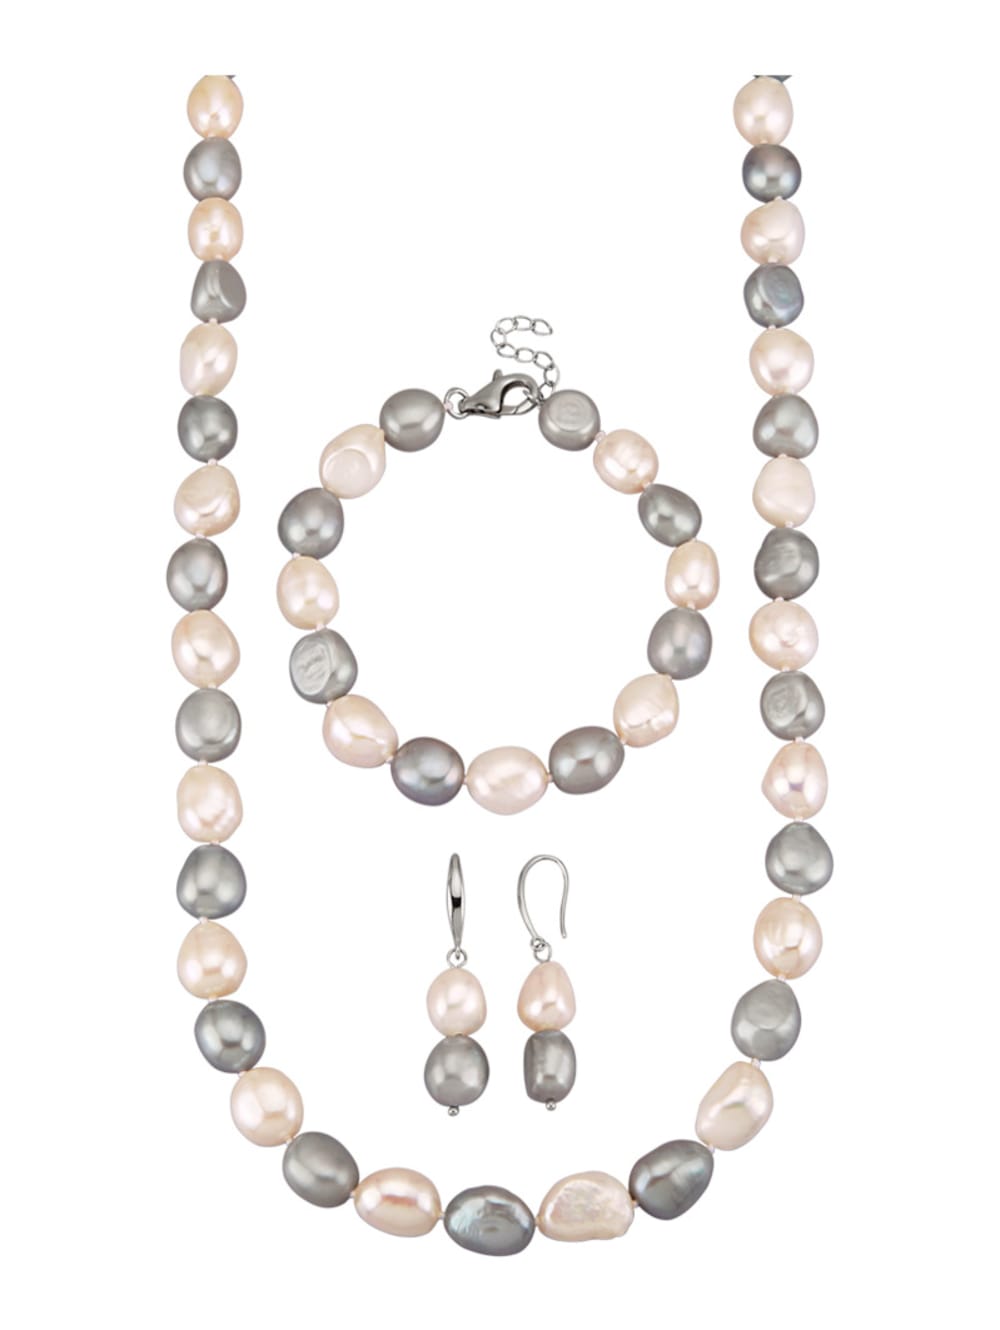 A101 55cm Natürliche Süßwasser Perlen Schmuck Halskette Perlenkette Collier neu 